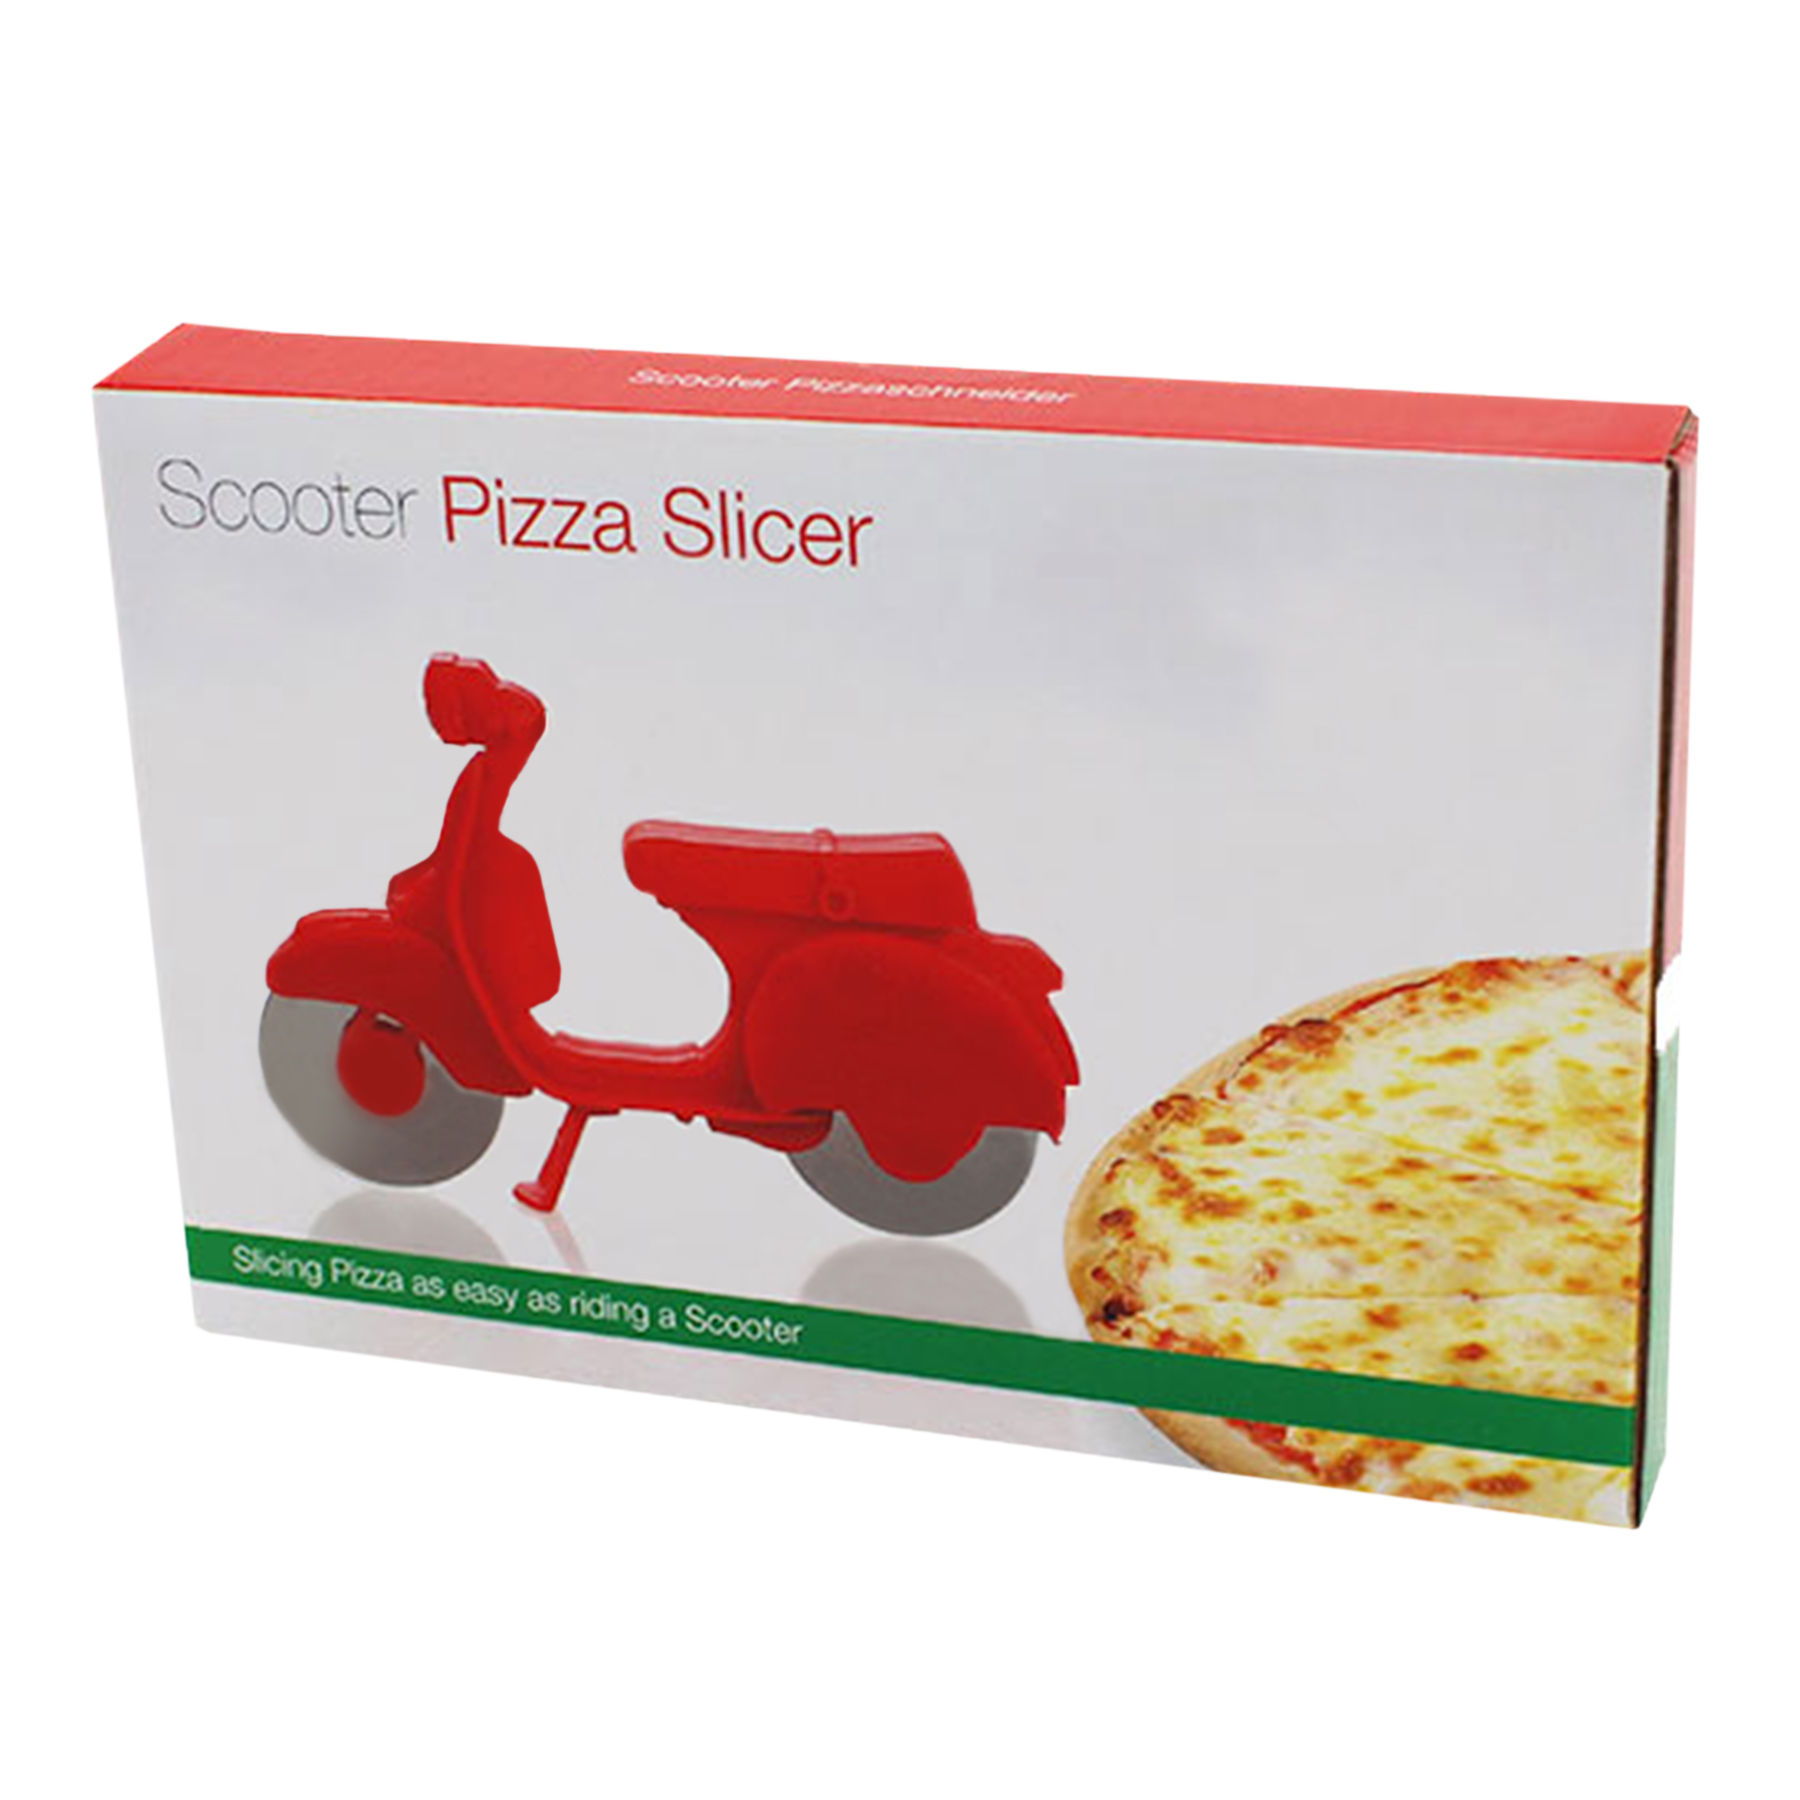 Pizzaschneider - Roller 3755 - 2